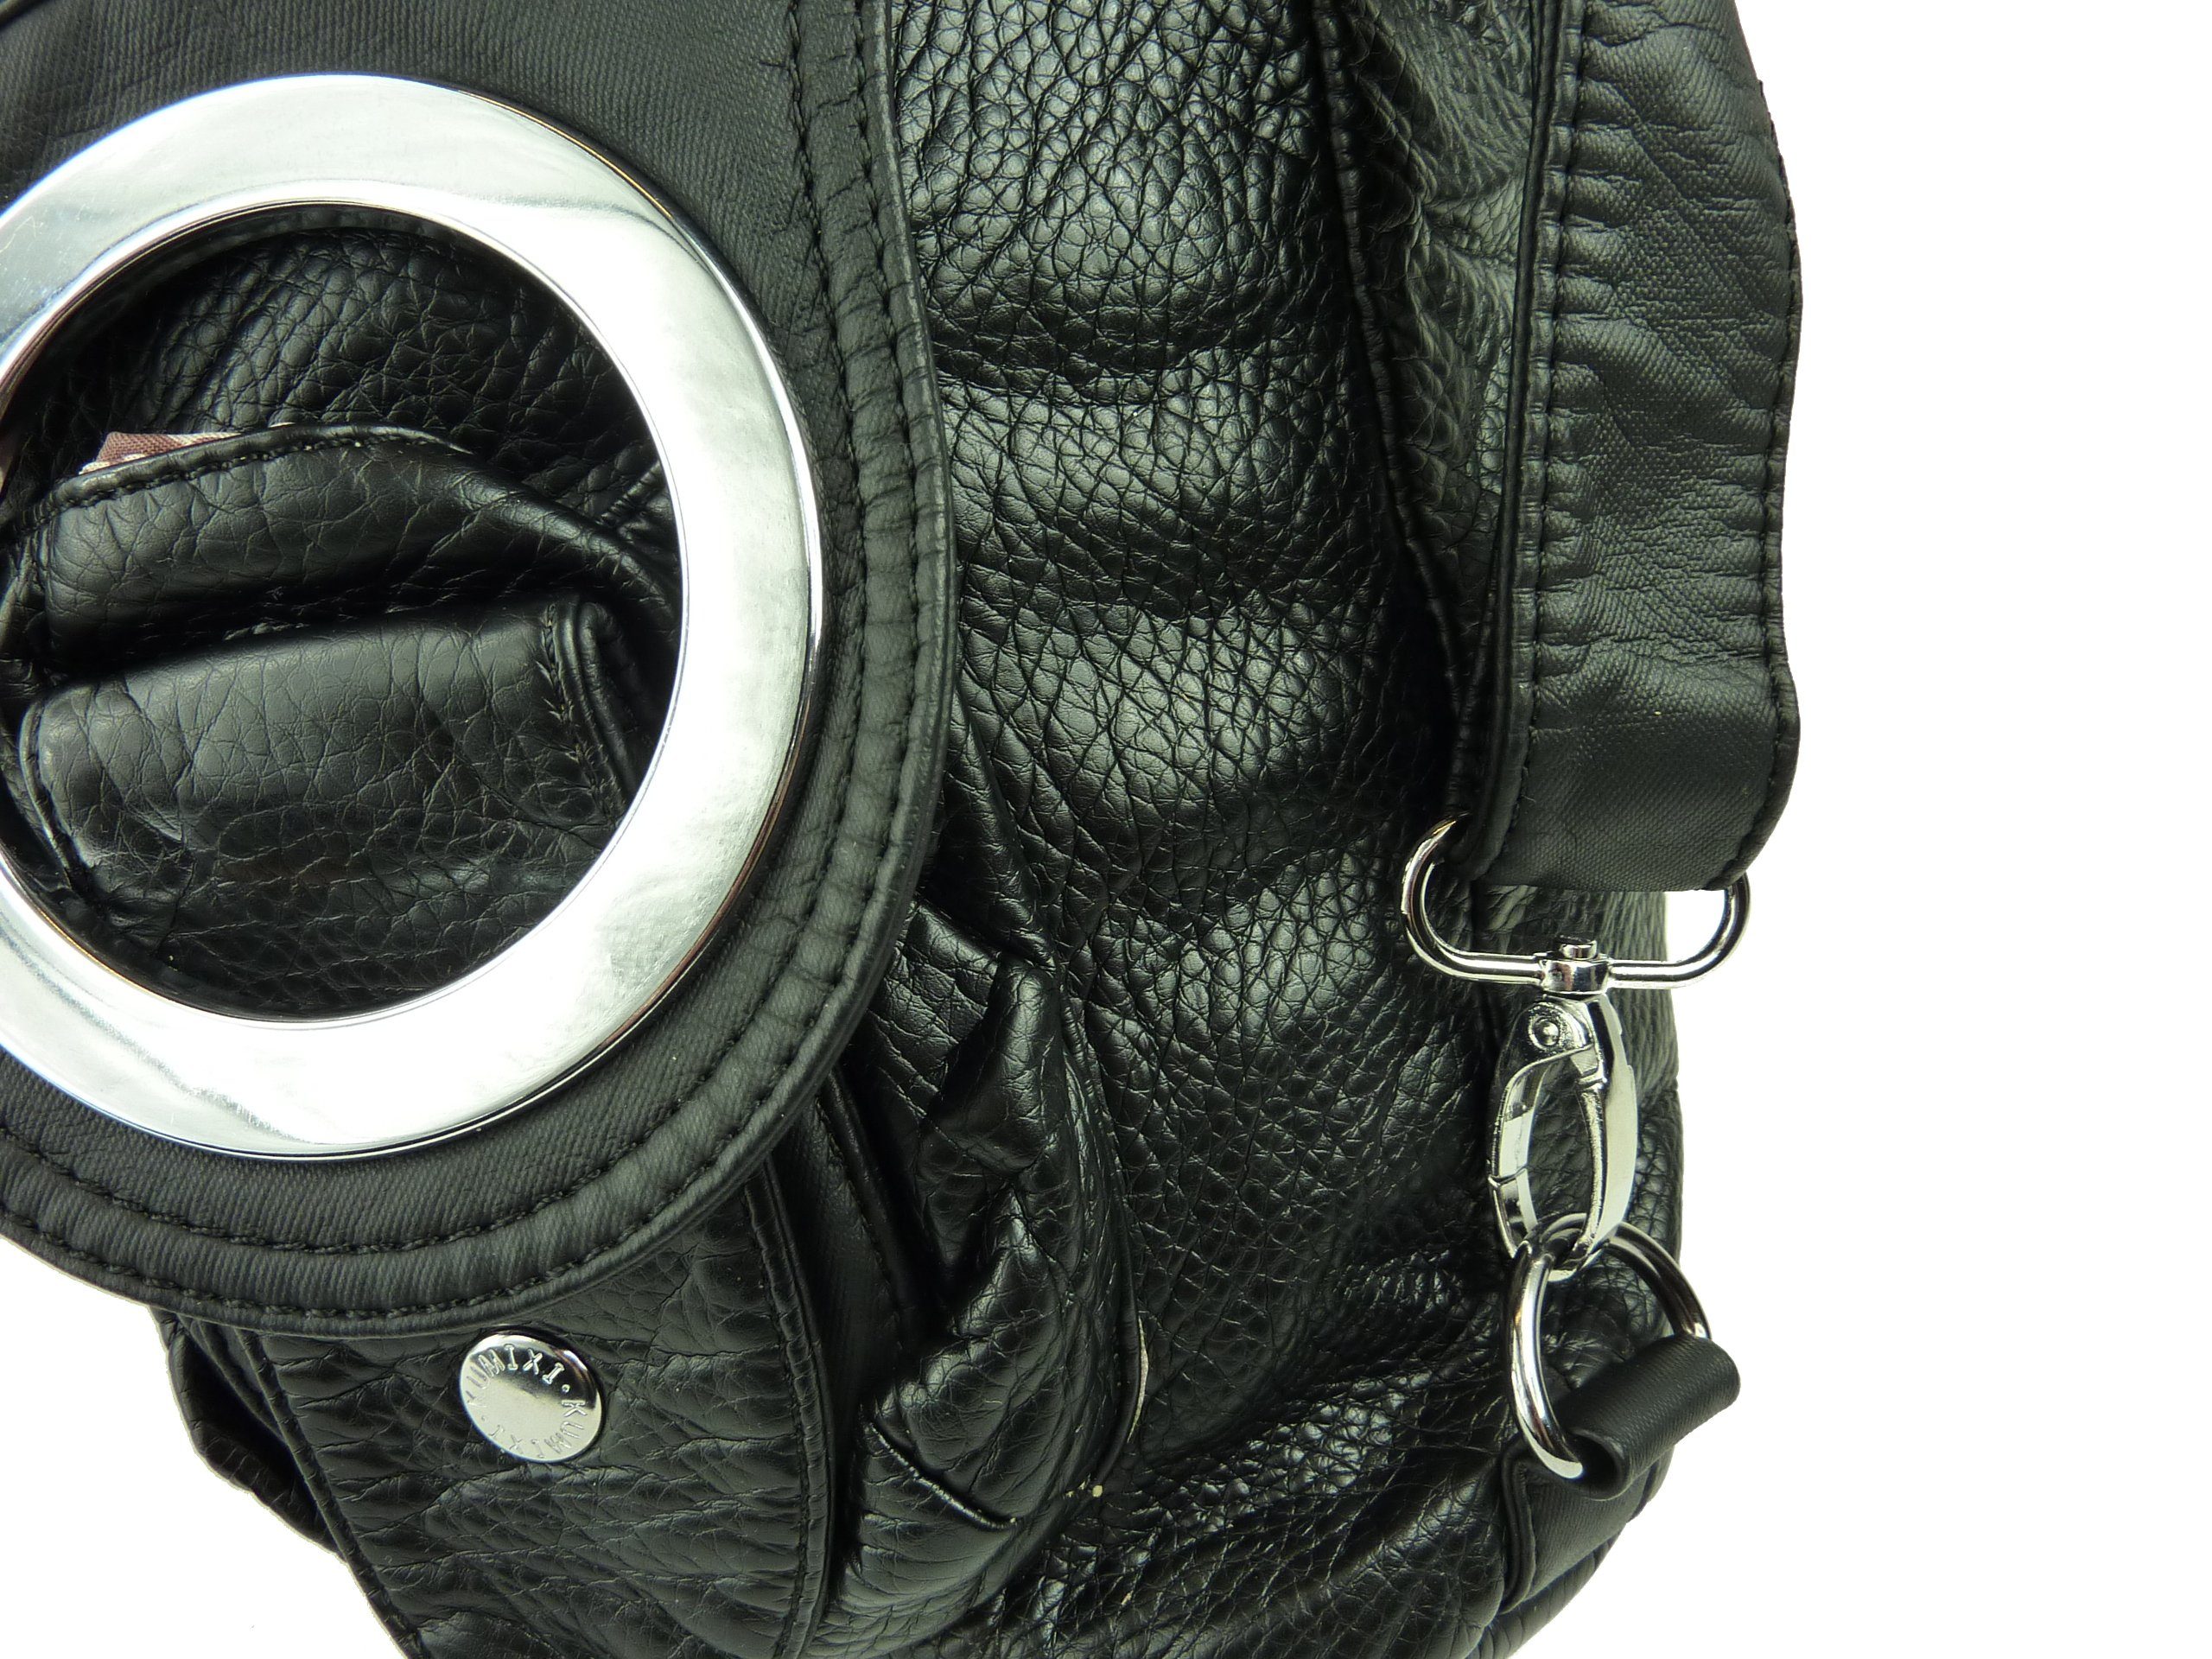 oder Schultertasche als W6802 schwarz Schulterriemen, Rucksack, verstellbarer Tasche tragbar Rucksack Taschen4life Rucksacktasche Multifunktionstasche, oder Schultertasche